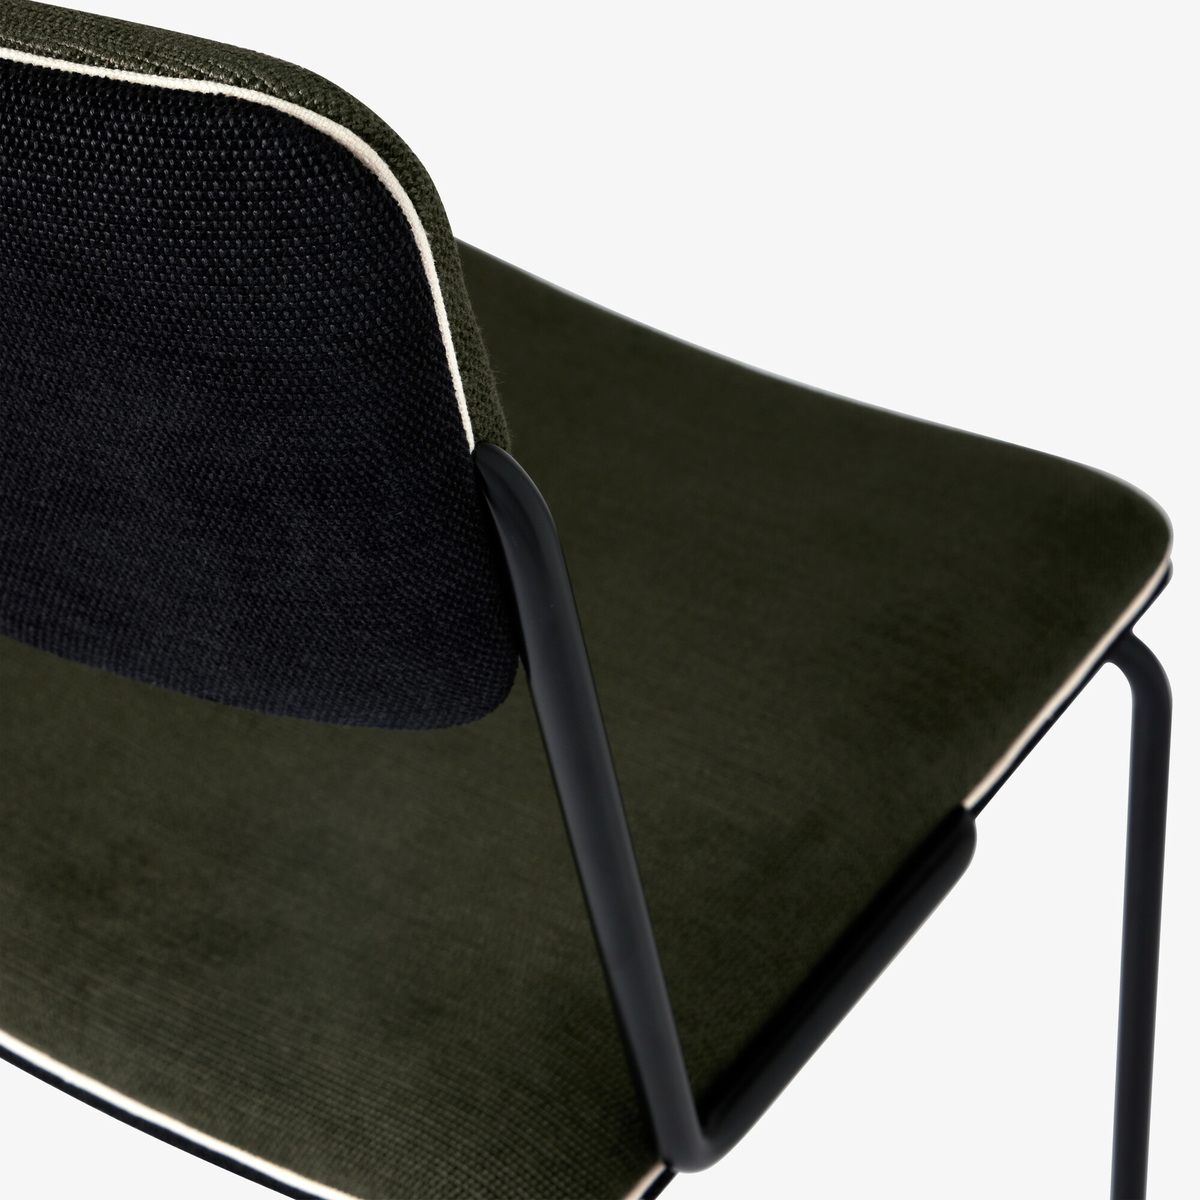 Chaise Double Jeu, Vert / Noir - H85 x l45 x P43 cm - Coton - image 5